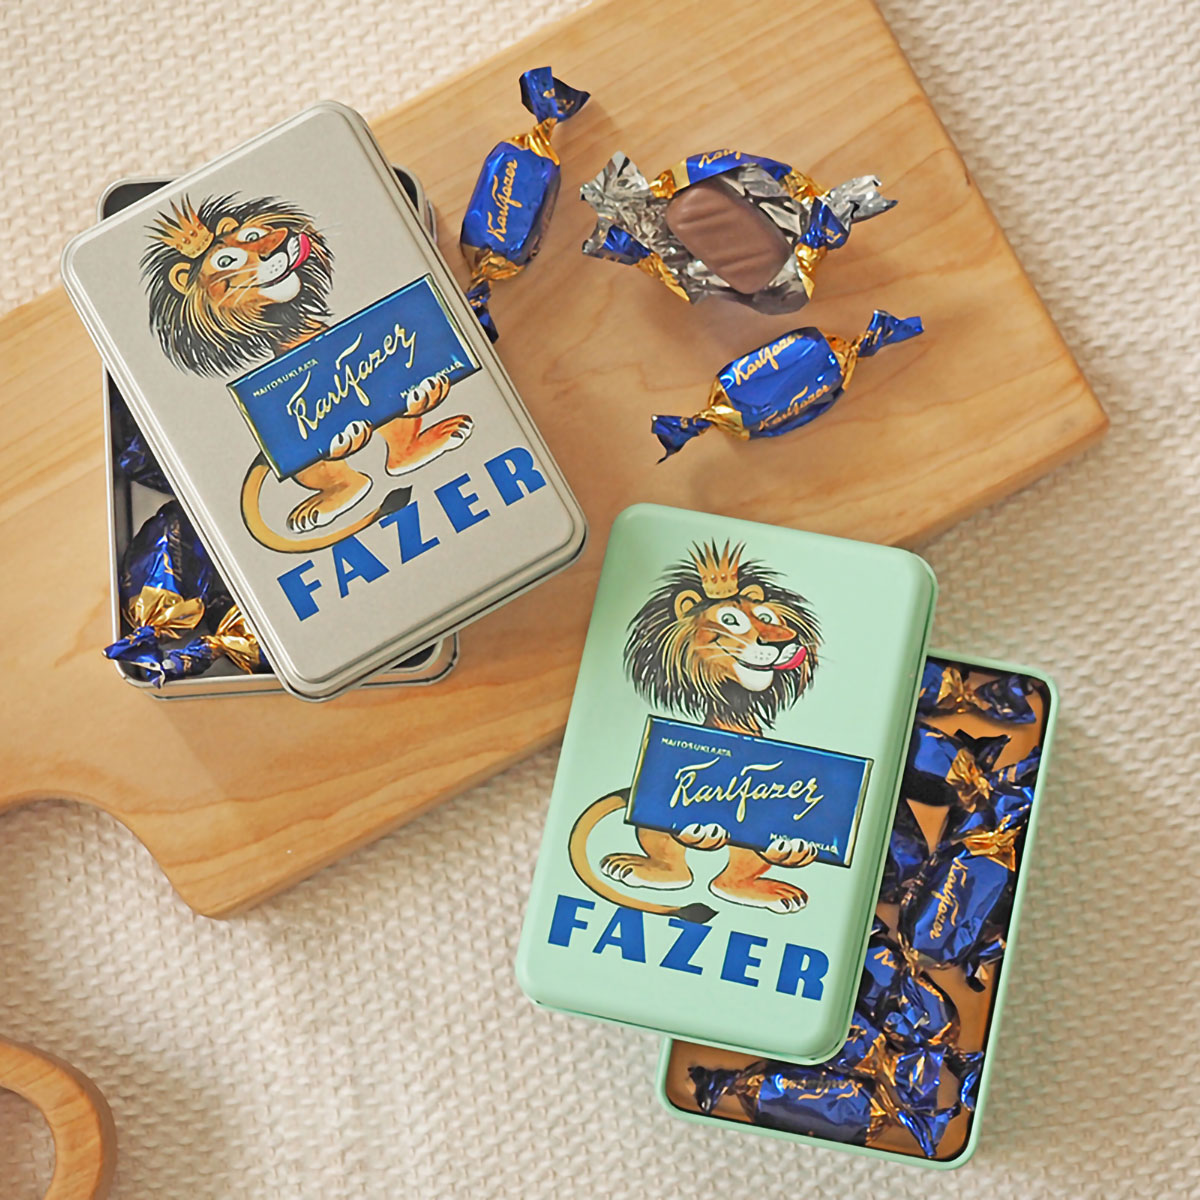 FAZER ファッツェル KarlFazer ミルクチョコレート ライオンレトロ缶 / ペパーミント ( 10粒 )